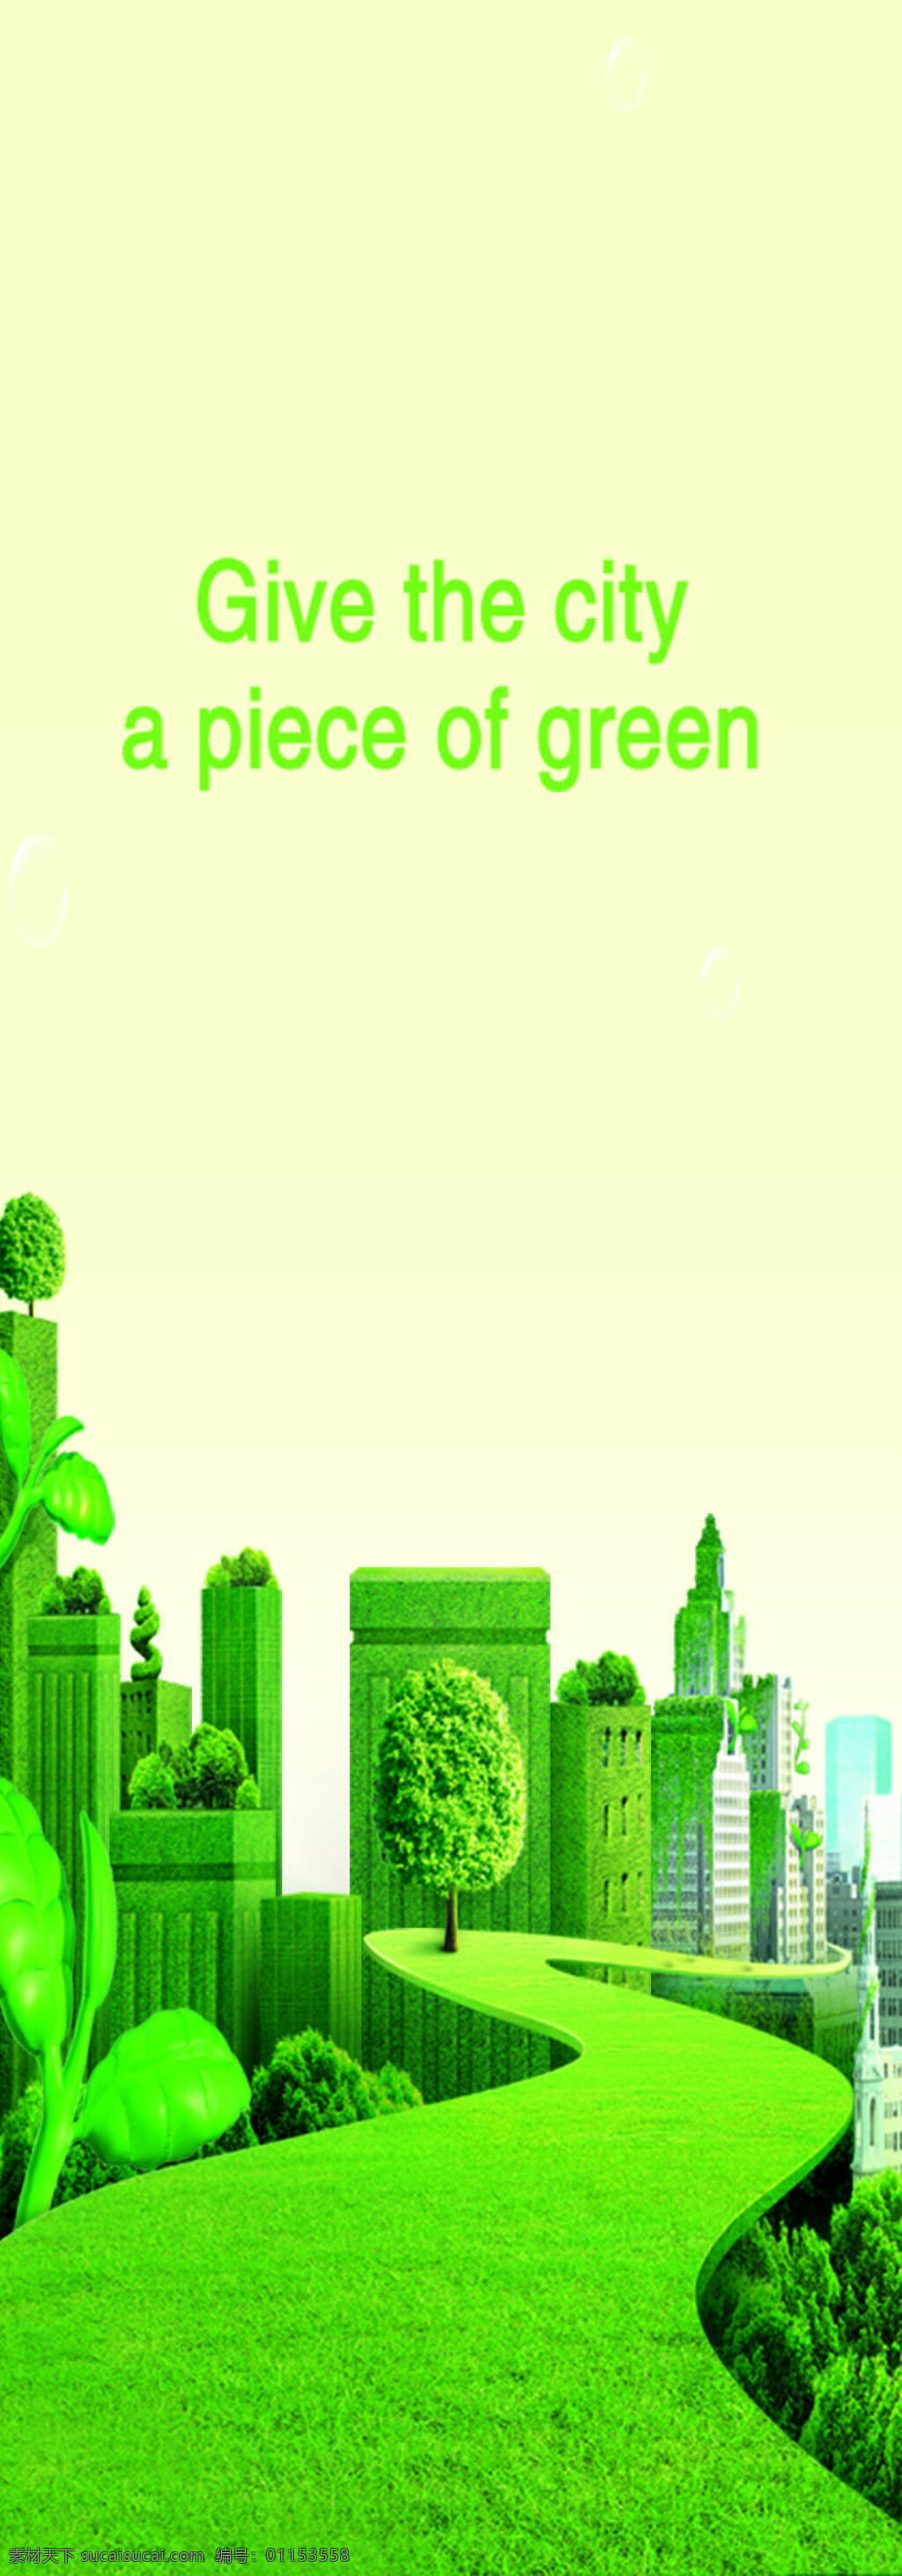 绿色城市海报 绿色环保 环境保护 绿色能源 生态保护 生态平衡 psd素材 绿色城市